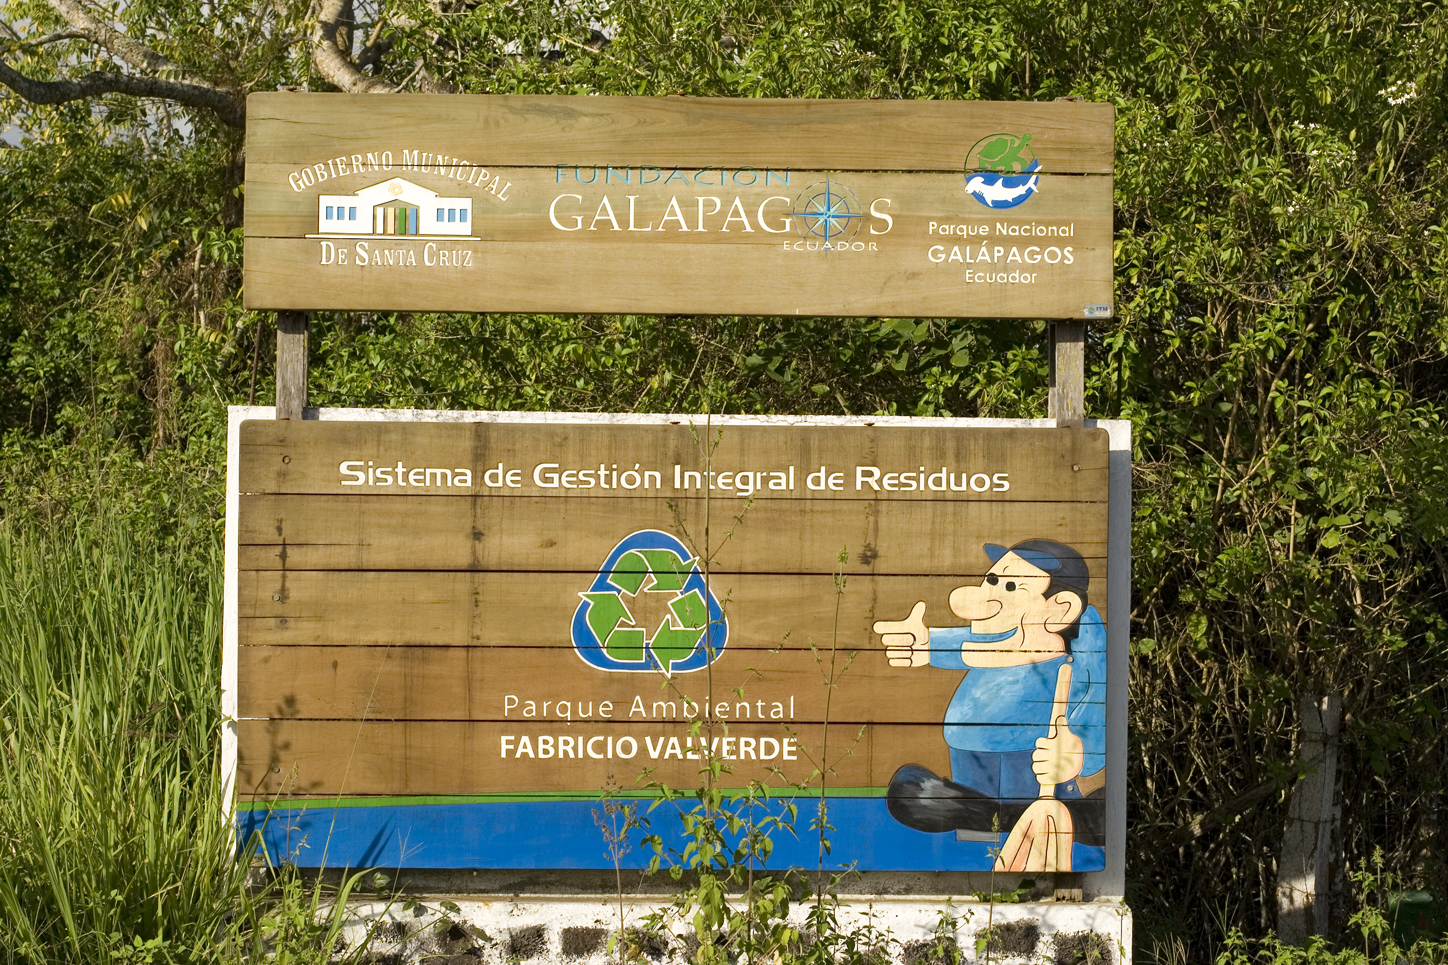 Galapagos recycling center